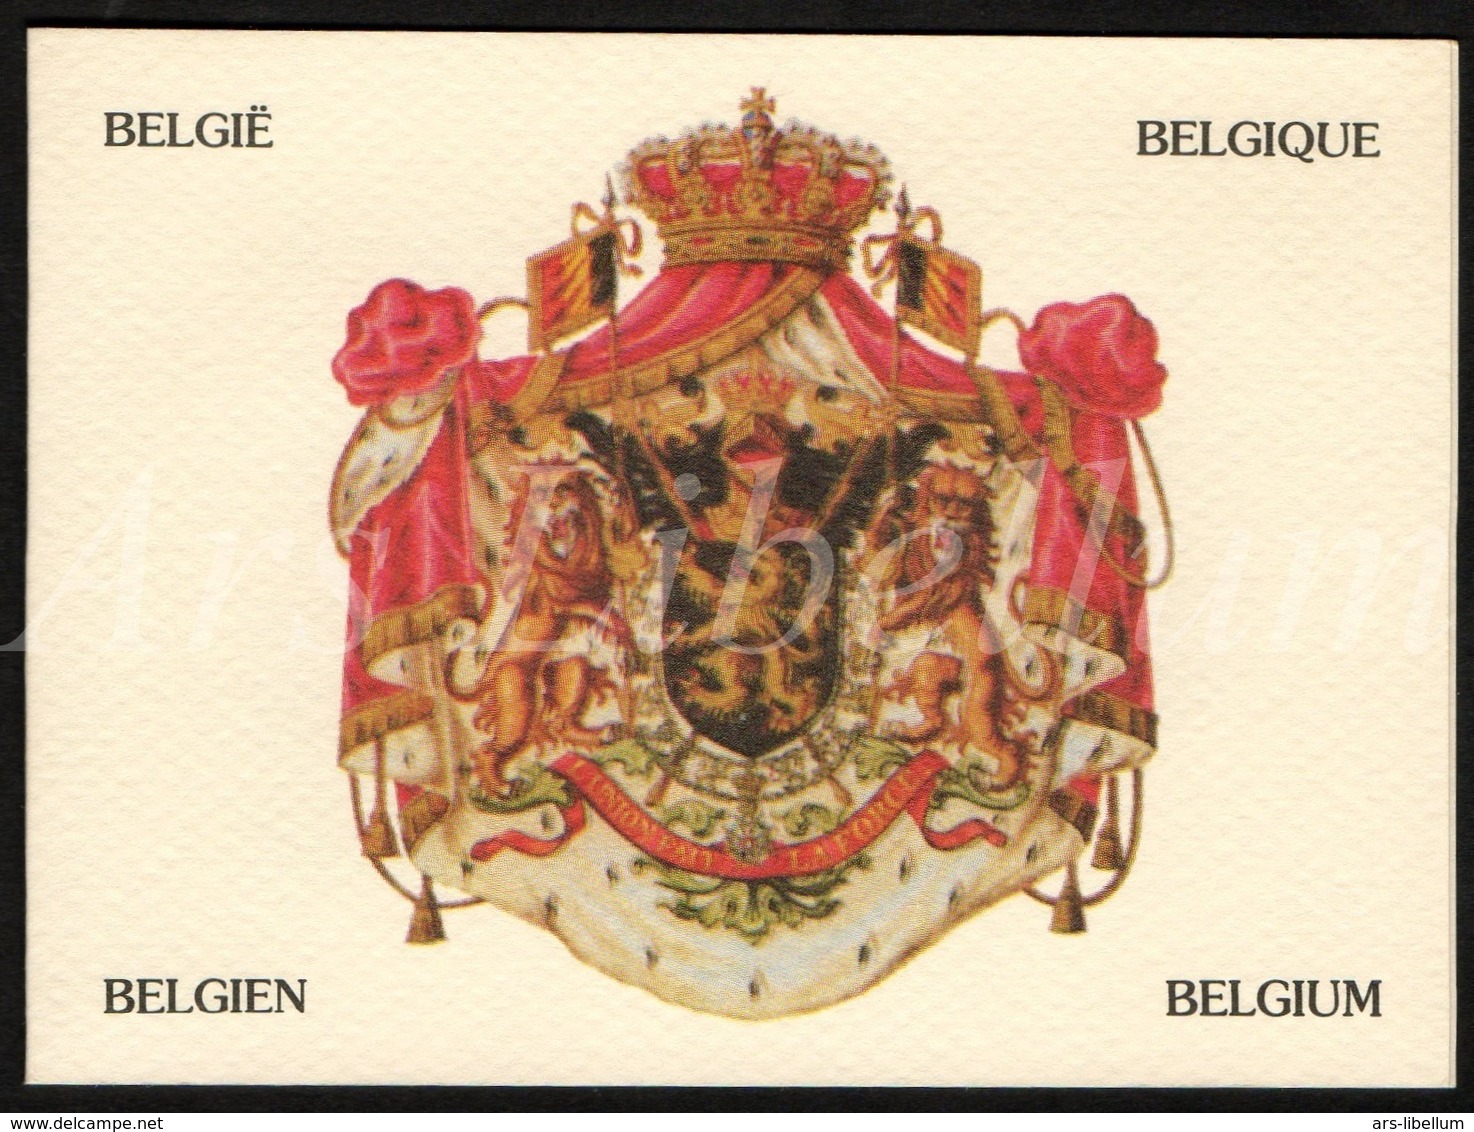 ROYALTY / Belgique / België / Famille Royale / Dynastie Belge / Koningshuis / Telefoonkaart / Belgacom / Telecard - Senza Chip